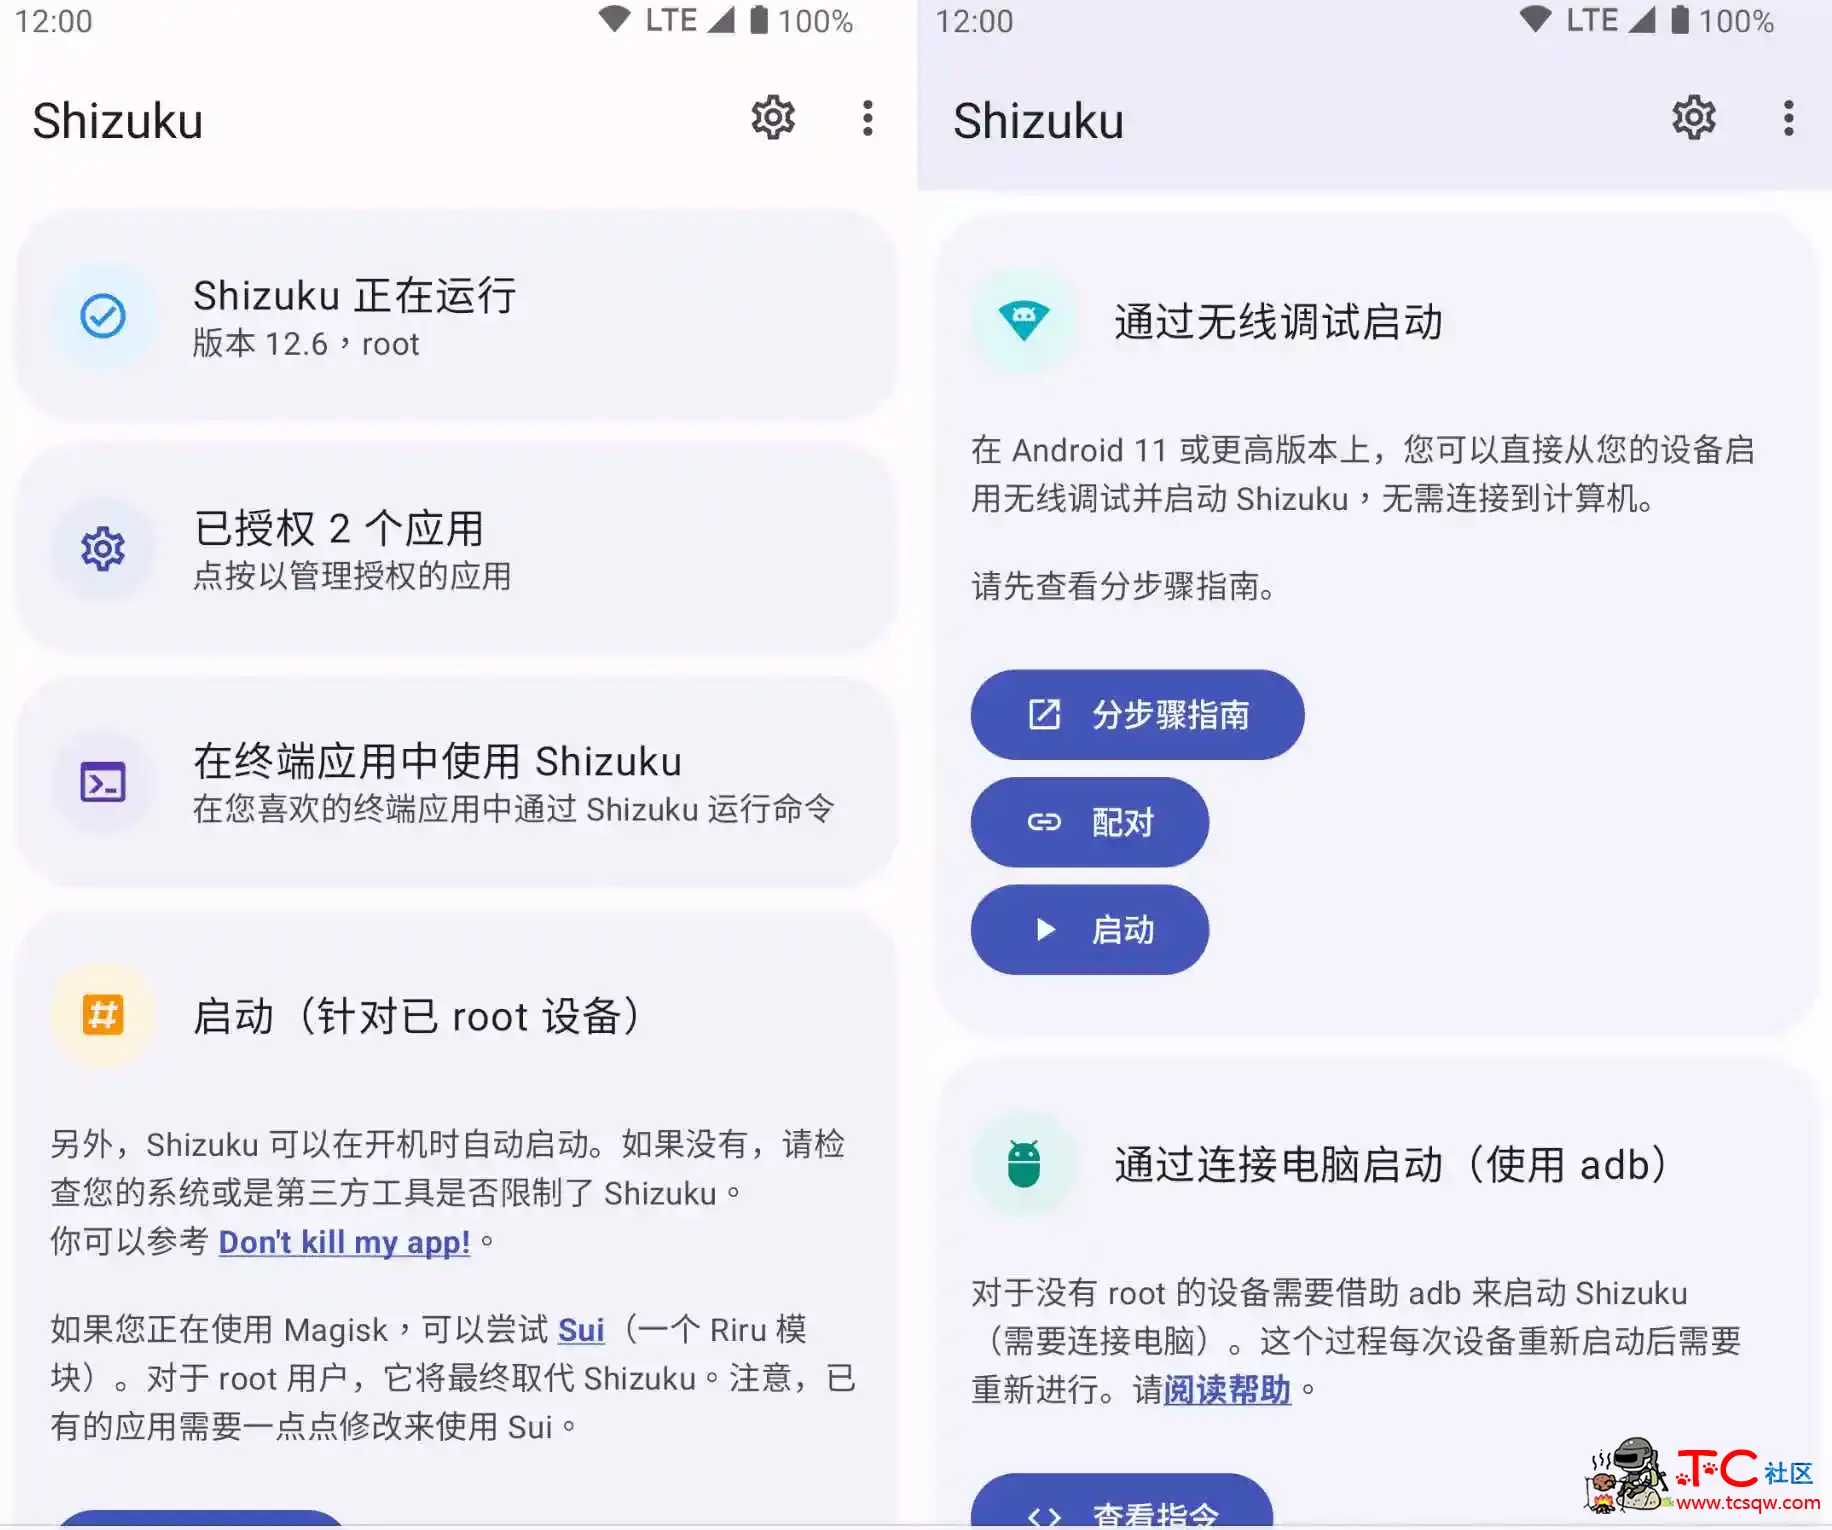 Shizuku_v13.3.0ADB批量快速激活 屠城辅助网www.tcfz1.com1694